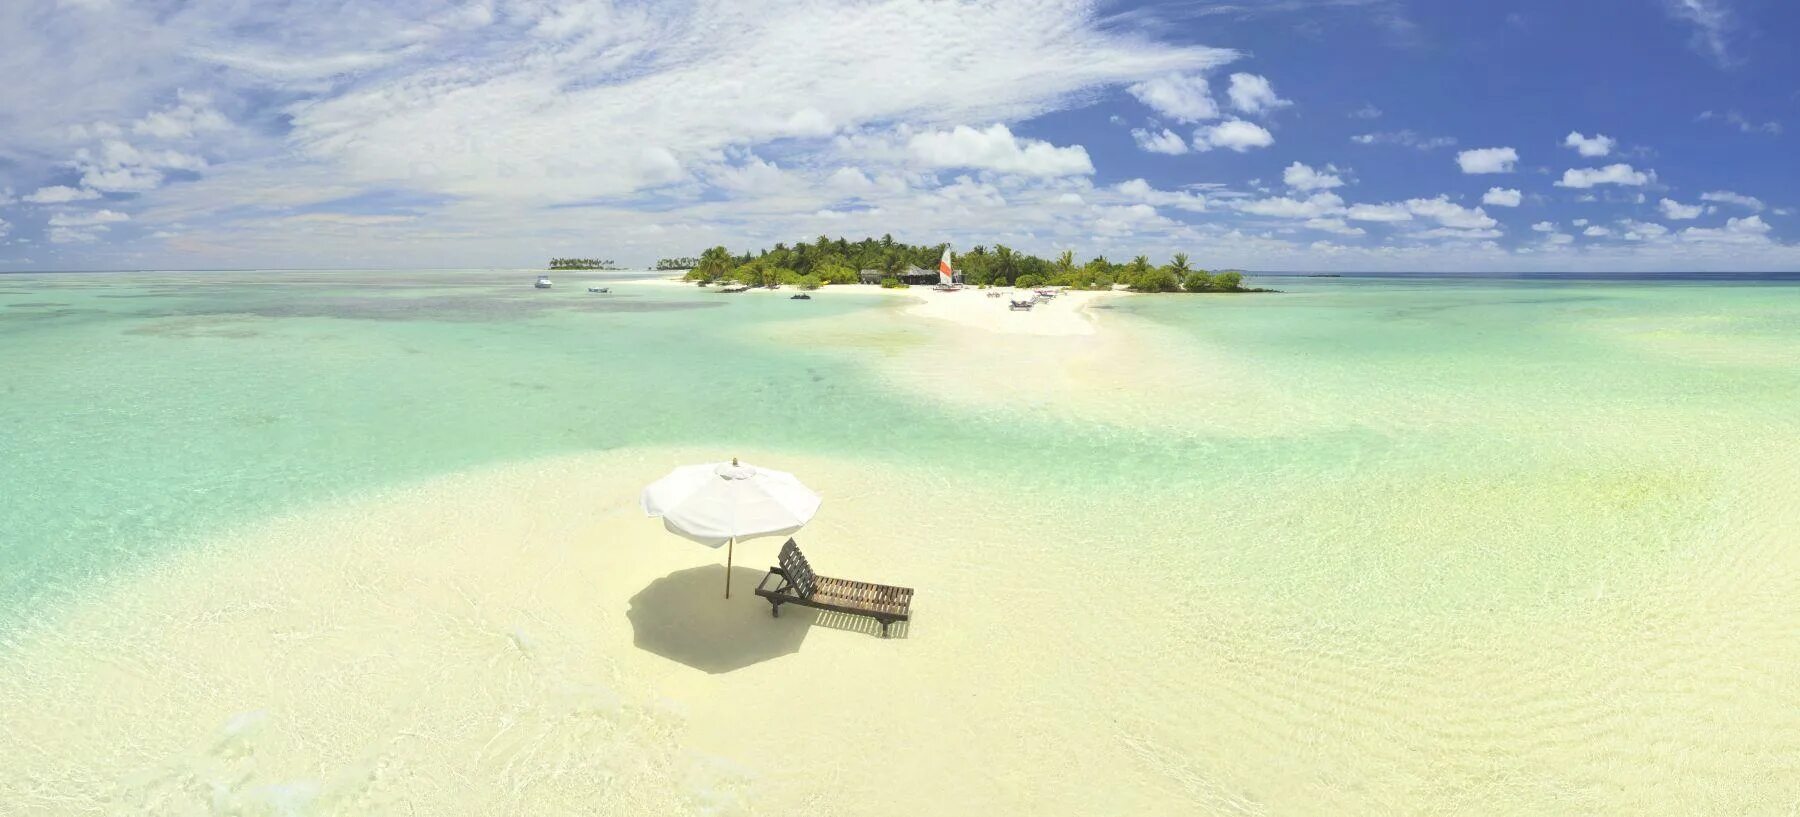 Fun Island Resort Maldives. Мальдивы вид с пляжа рыб. Мальдивы в виде копья. Fun island